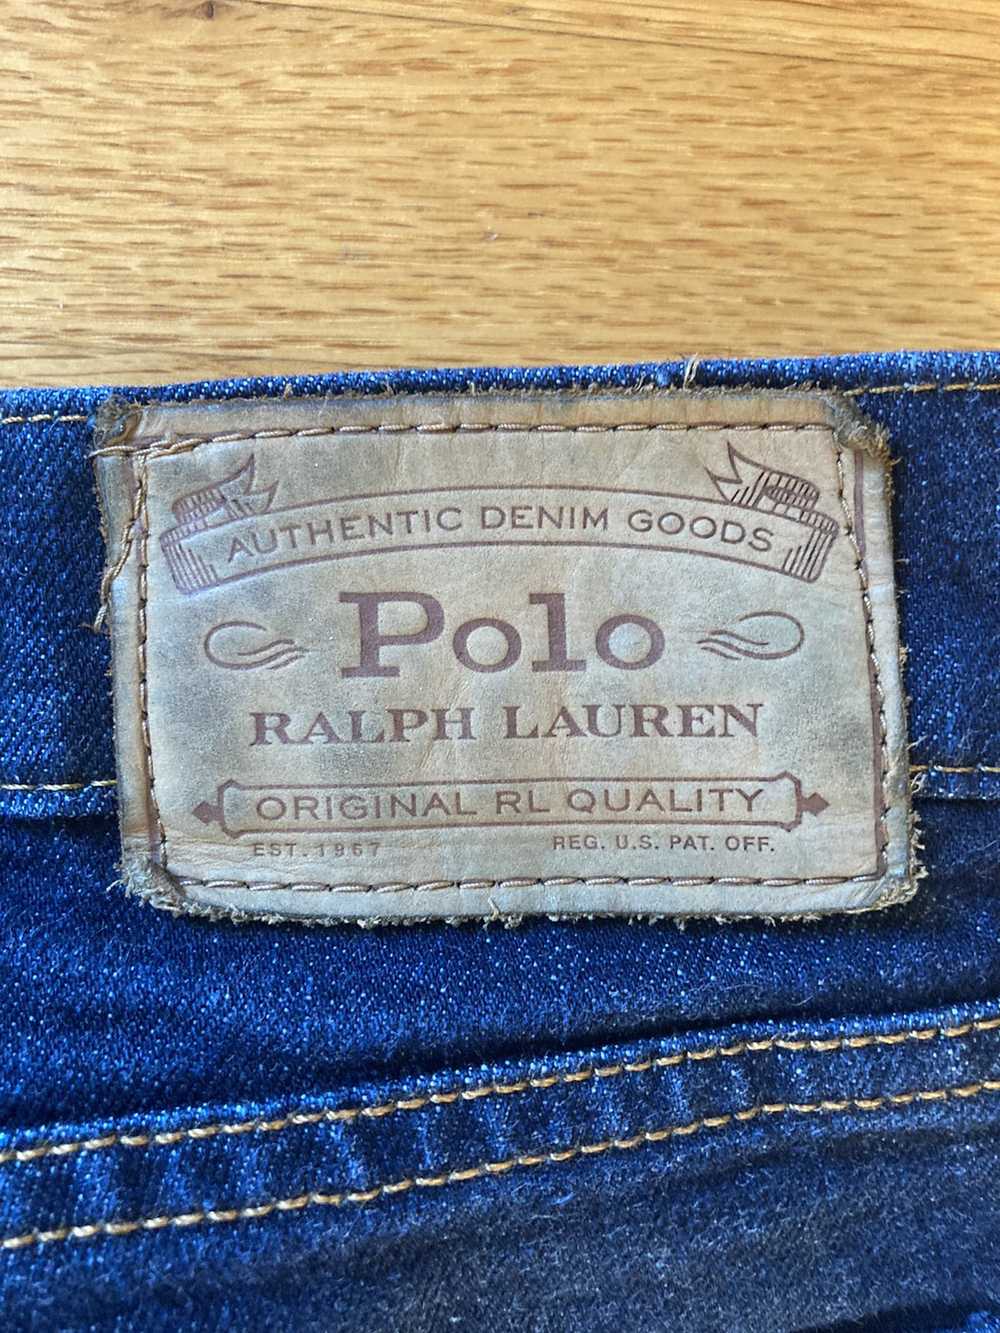 Polo Ralph Lauren Vintage Polo Ralph Lauren jeans - image 3